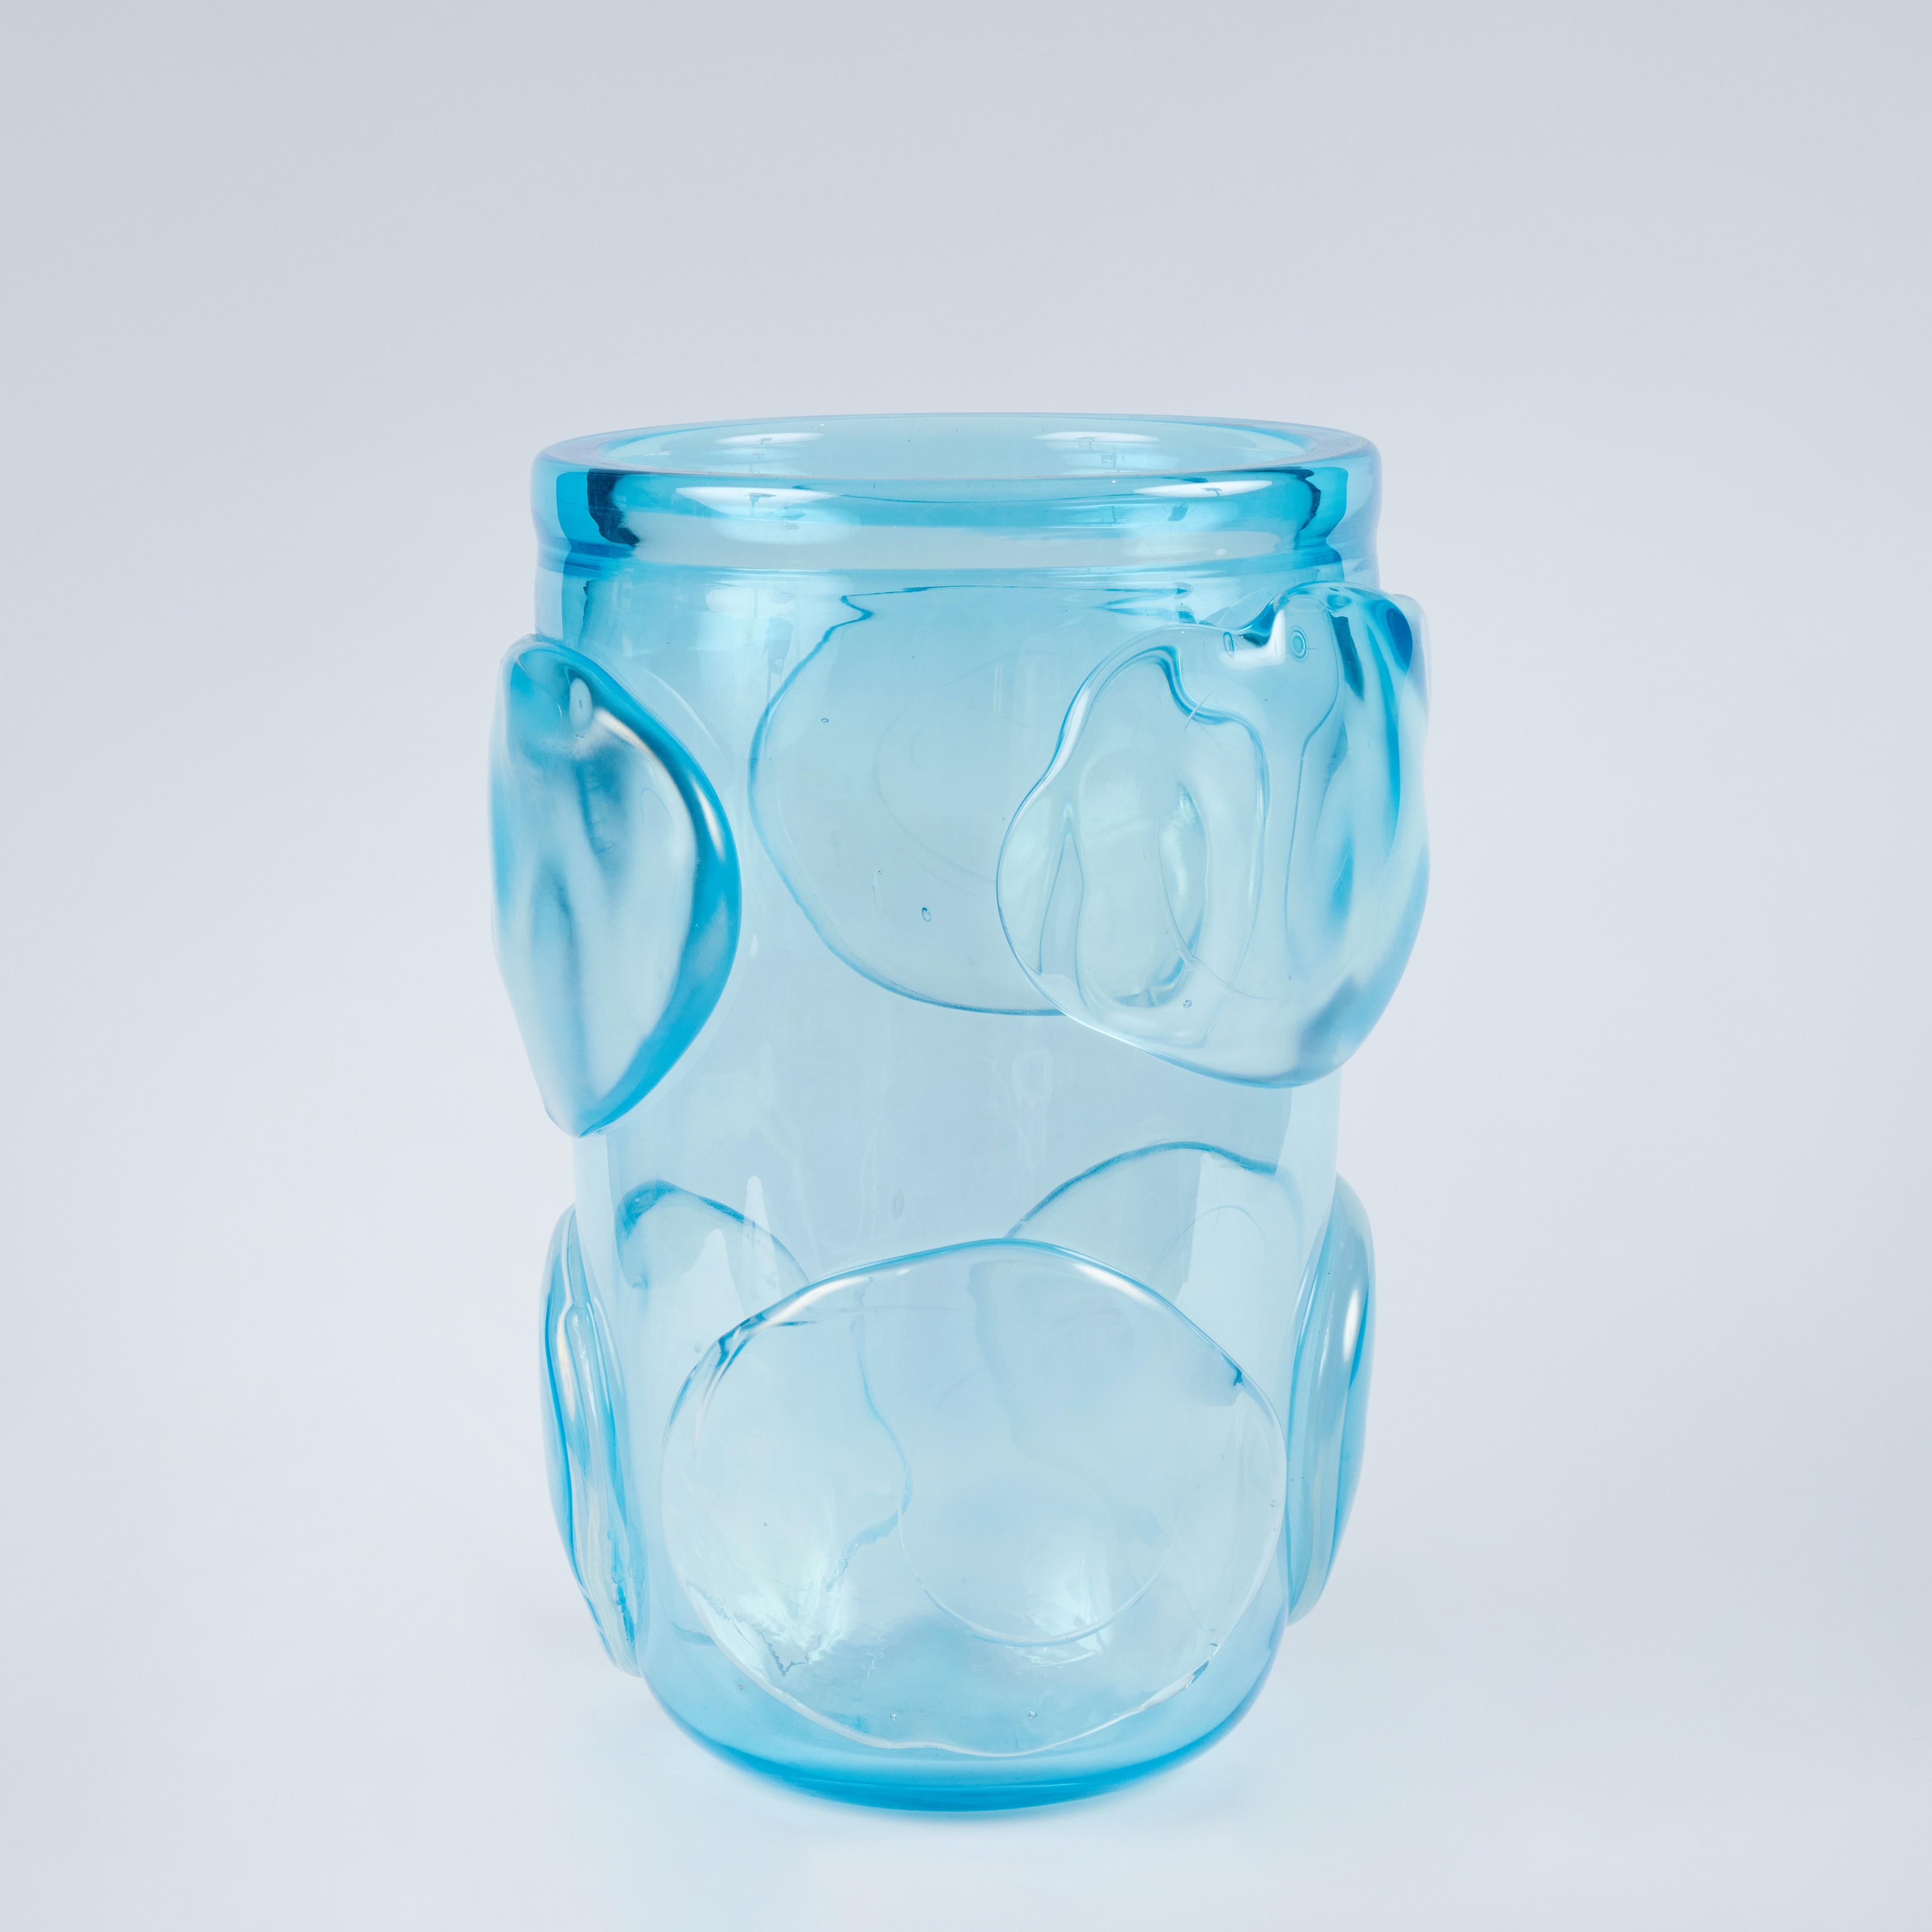 Paire de vases en verre de Murano soufflés à la main, avec un design 3D, dans une magnifique nuance de bleu.